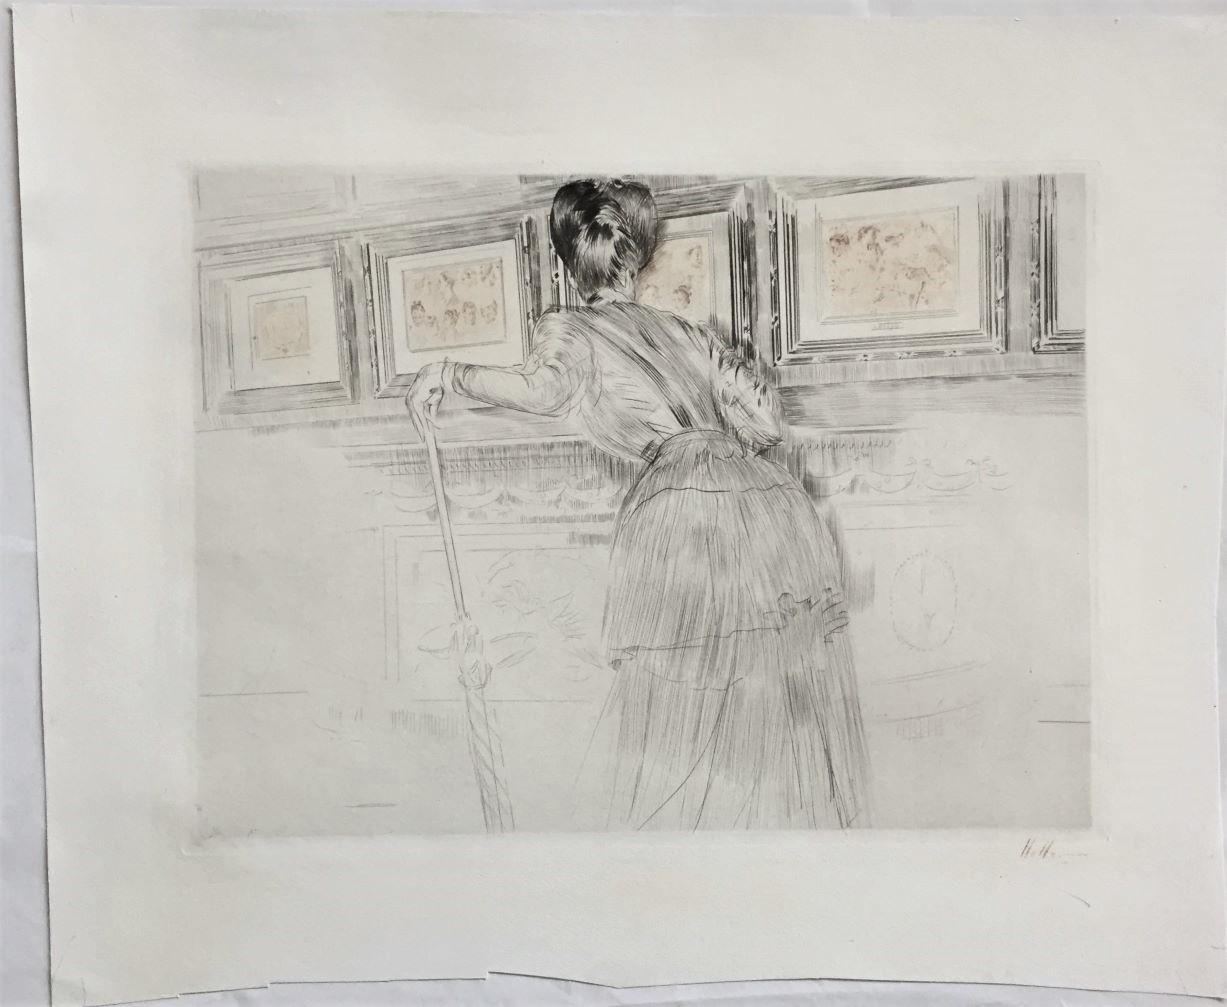 Madame Helleu Blickt auf Watteau-Zeichnungen im Louvre.. (Impressionismus), Print, von Paul César Helleu